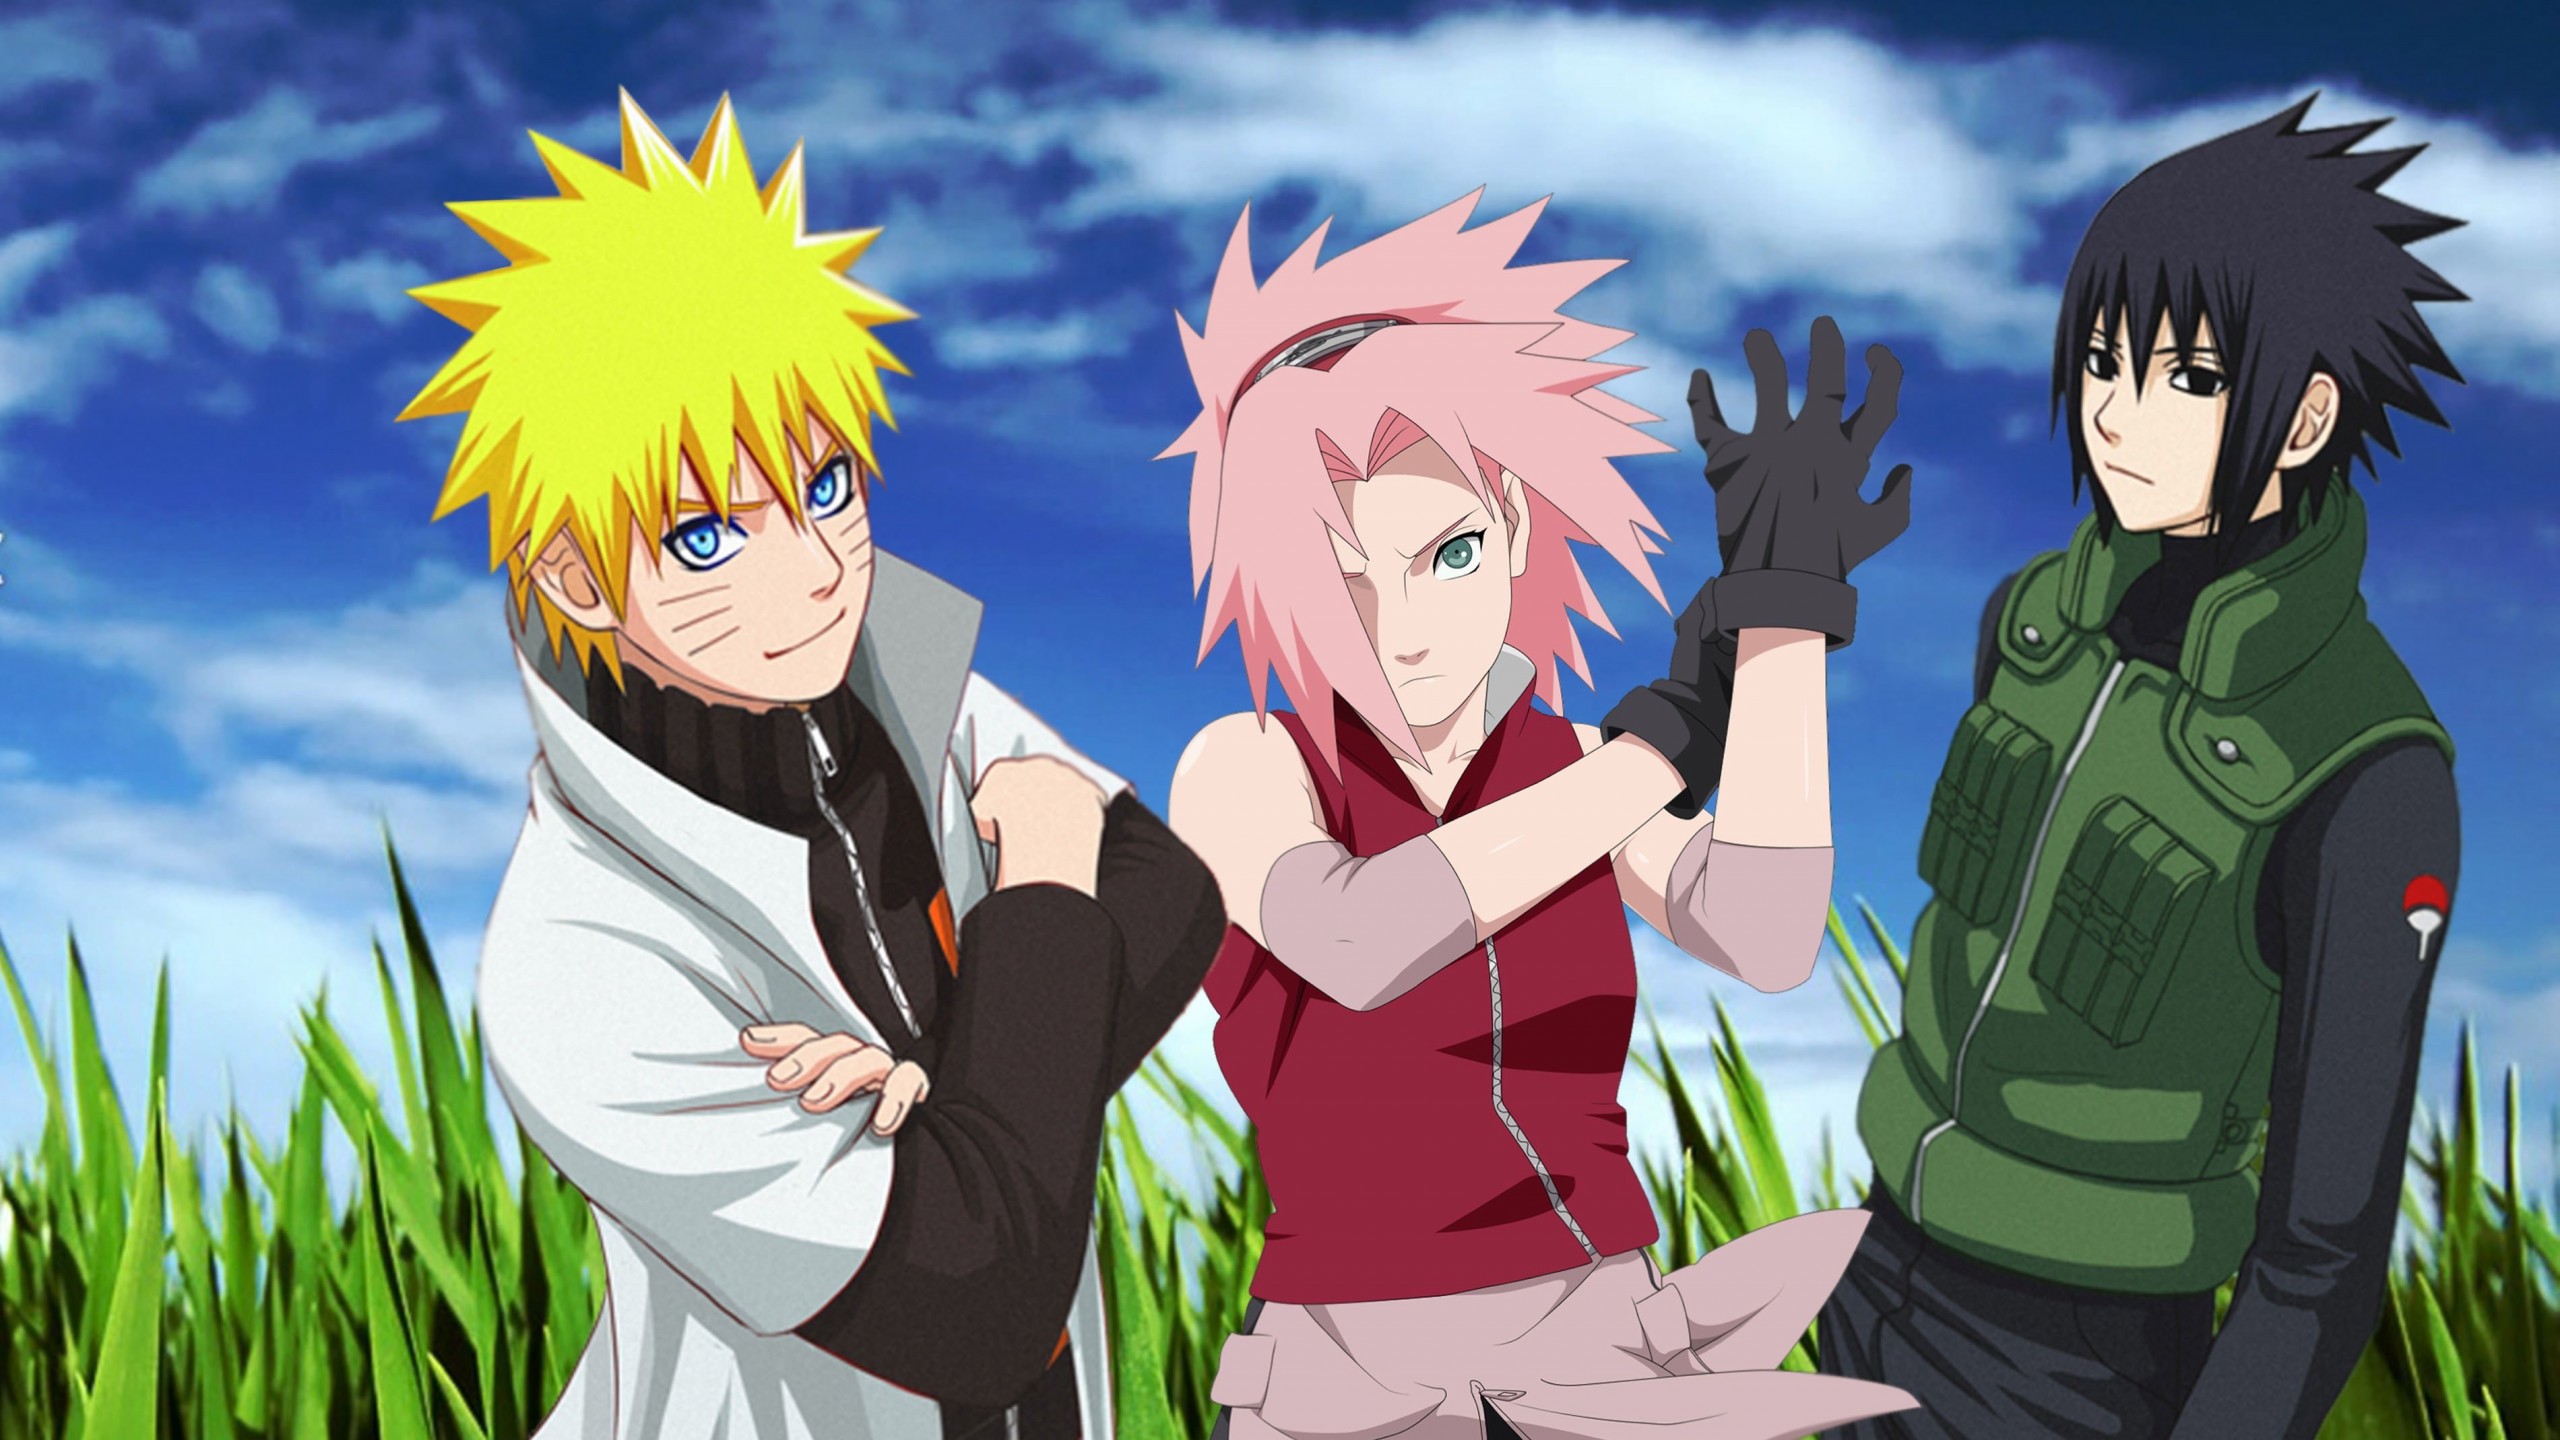 Naruto, Sakura and Sasuke Wallpaper for Desktop 2560x1440